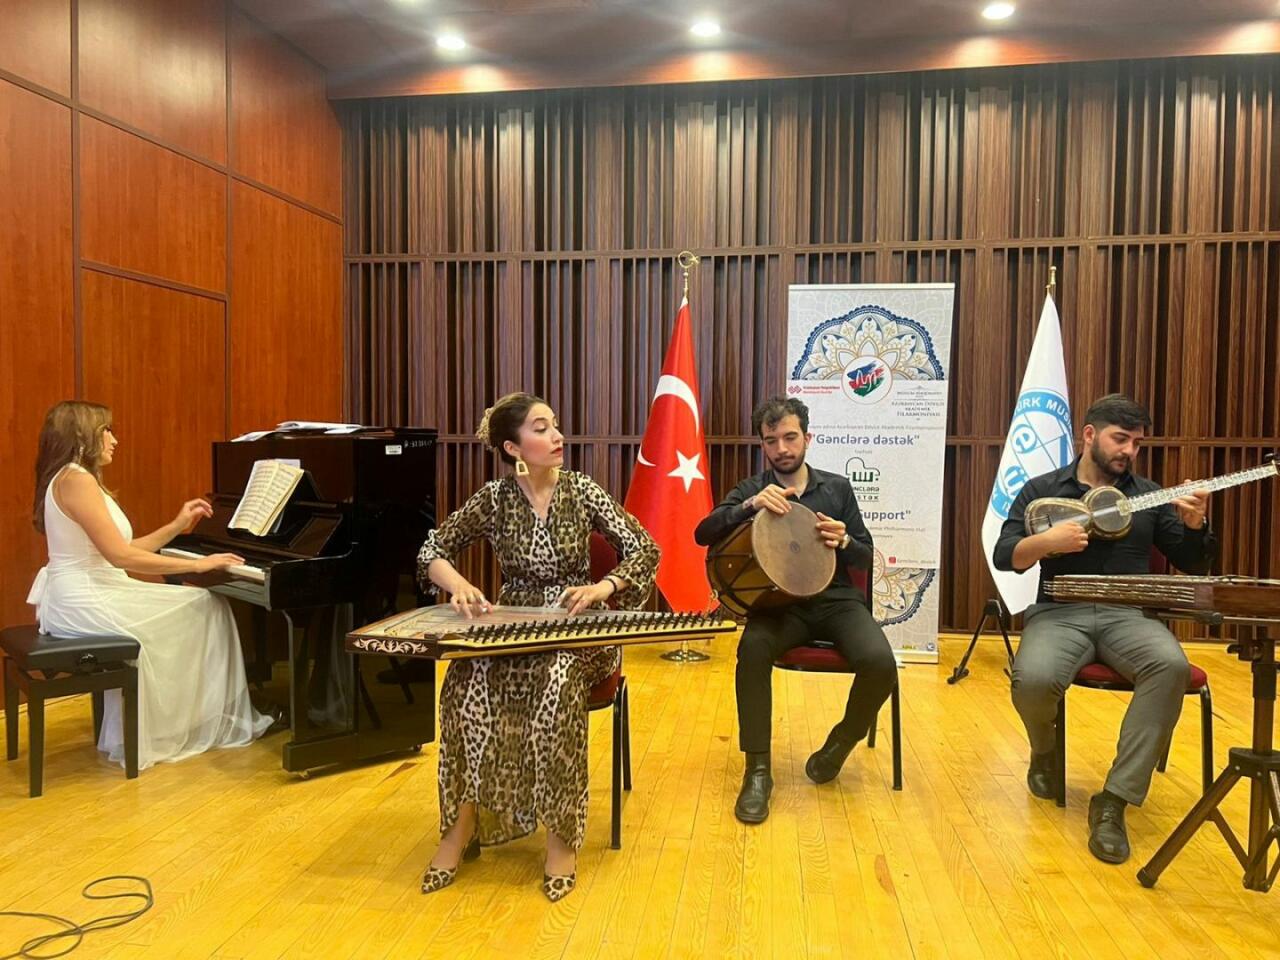 Успех азербайджанского проекта "Gənclərə dəstək" в Турции